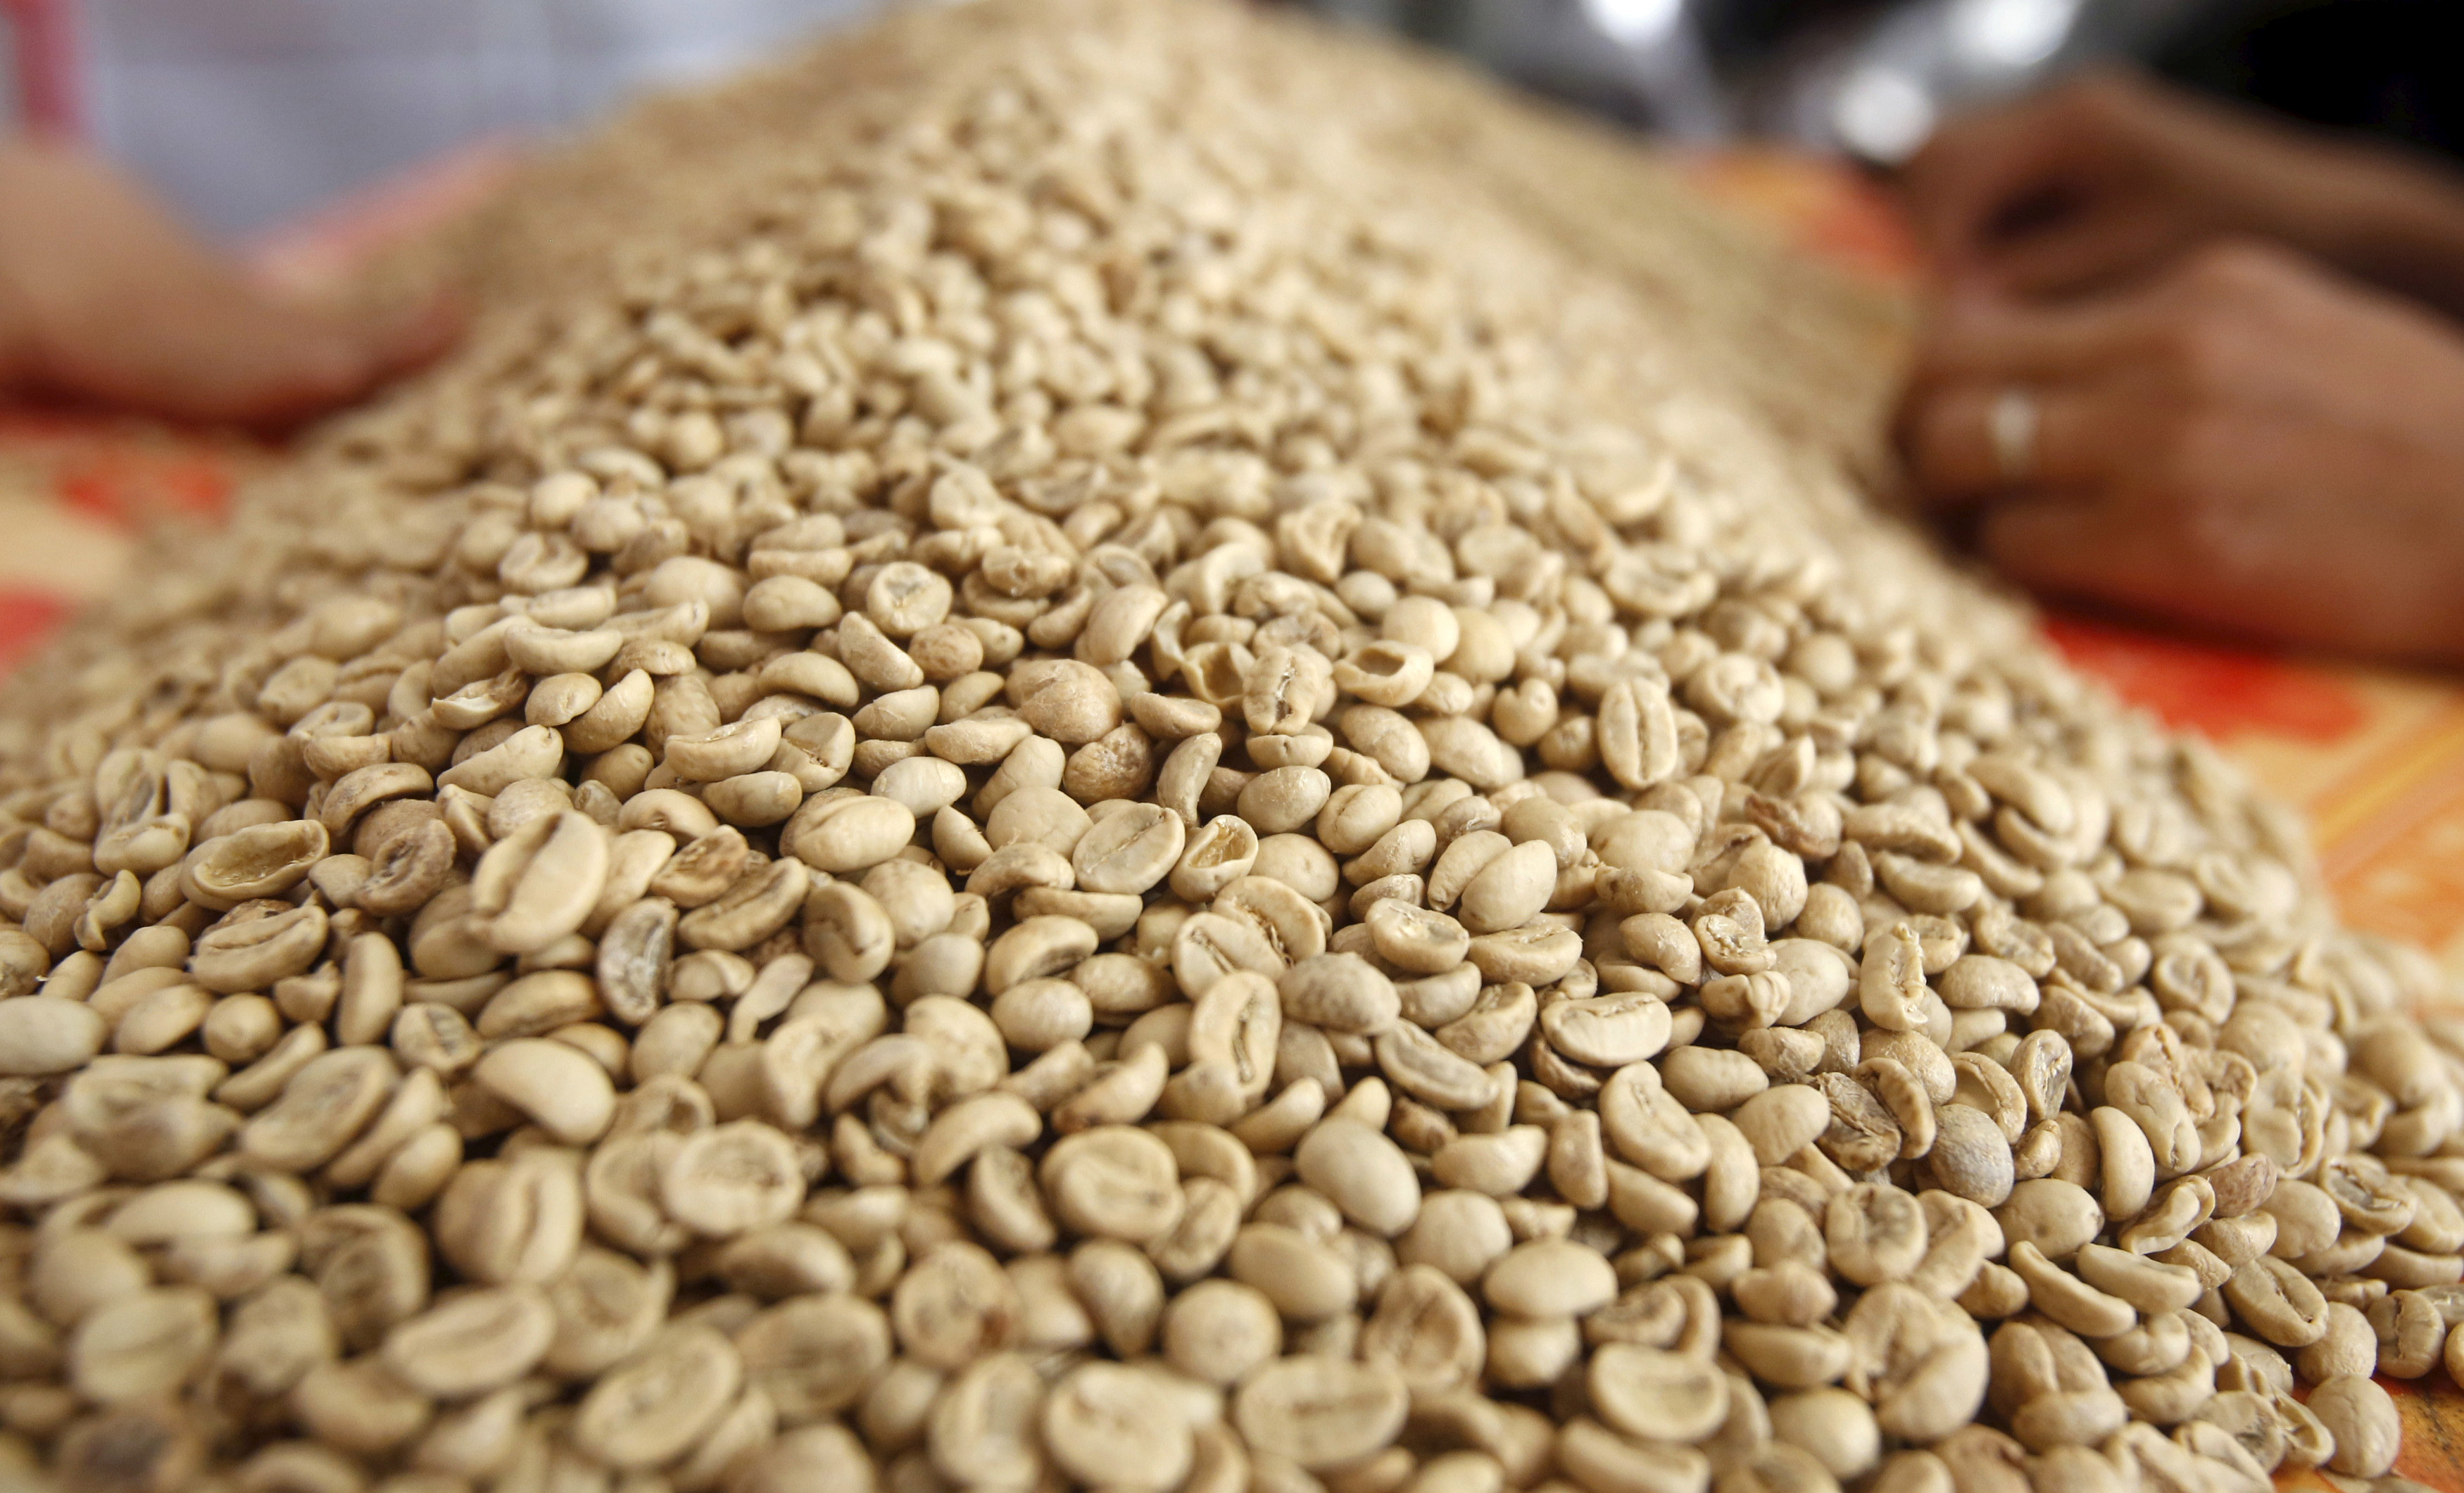 国际咖啡组织（ICO）的罗布斯塔咖啡豆批发价指数4月上涨17%，至1979年以来最高。路透